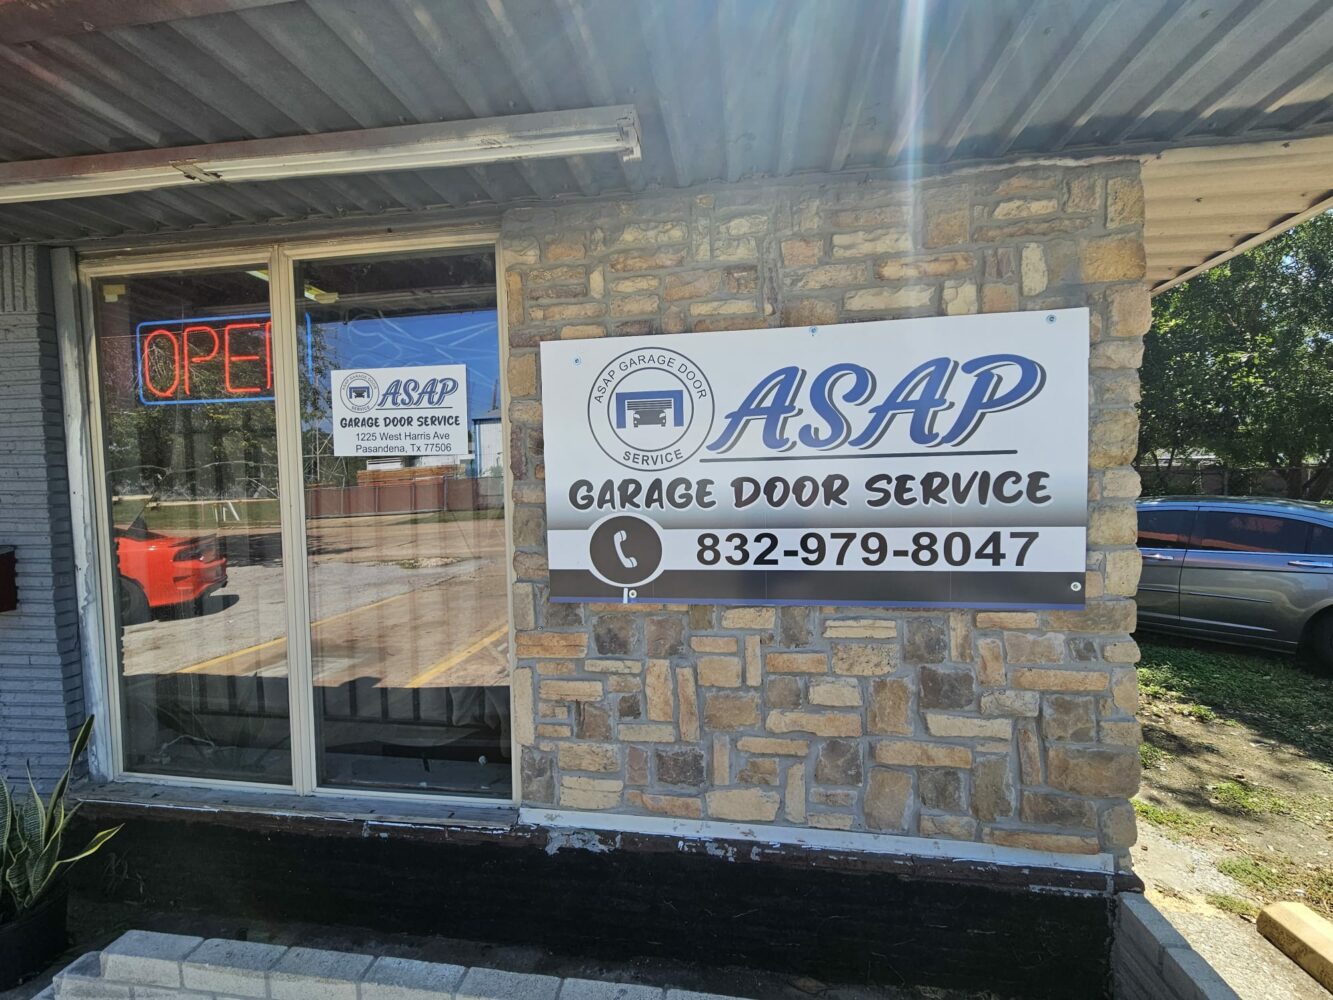 ASAP Garage Door Service in Pasadena, Texas